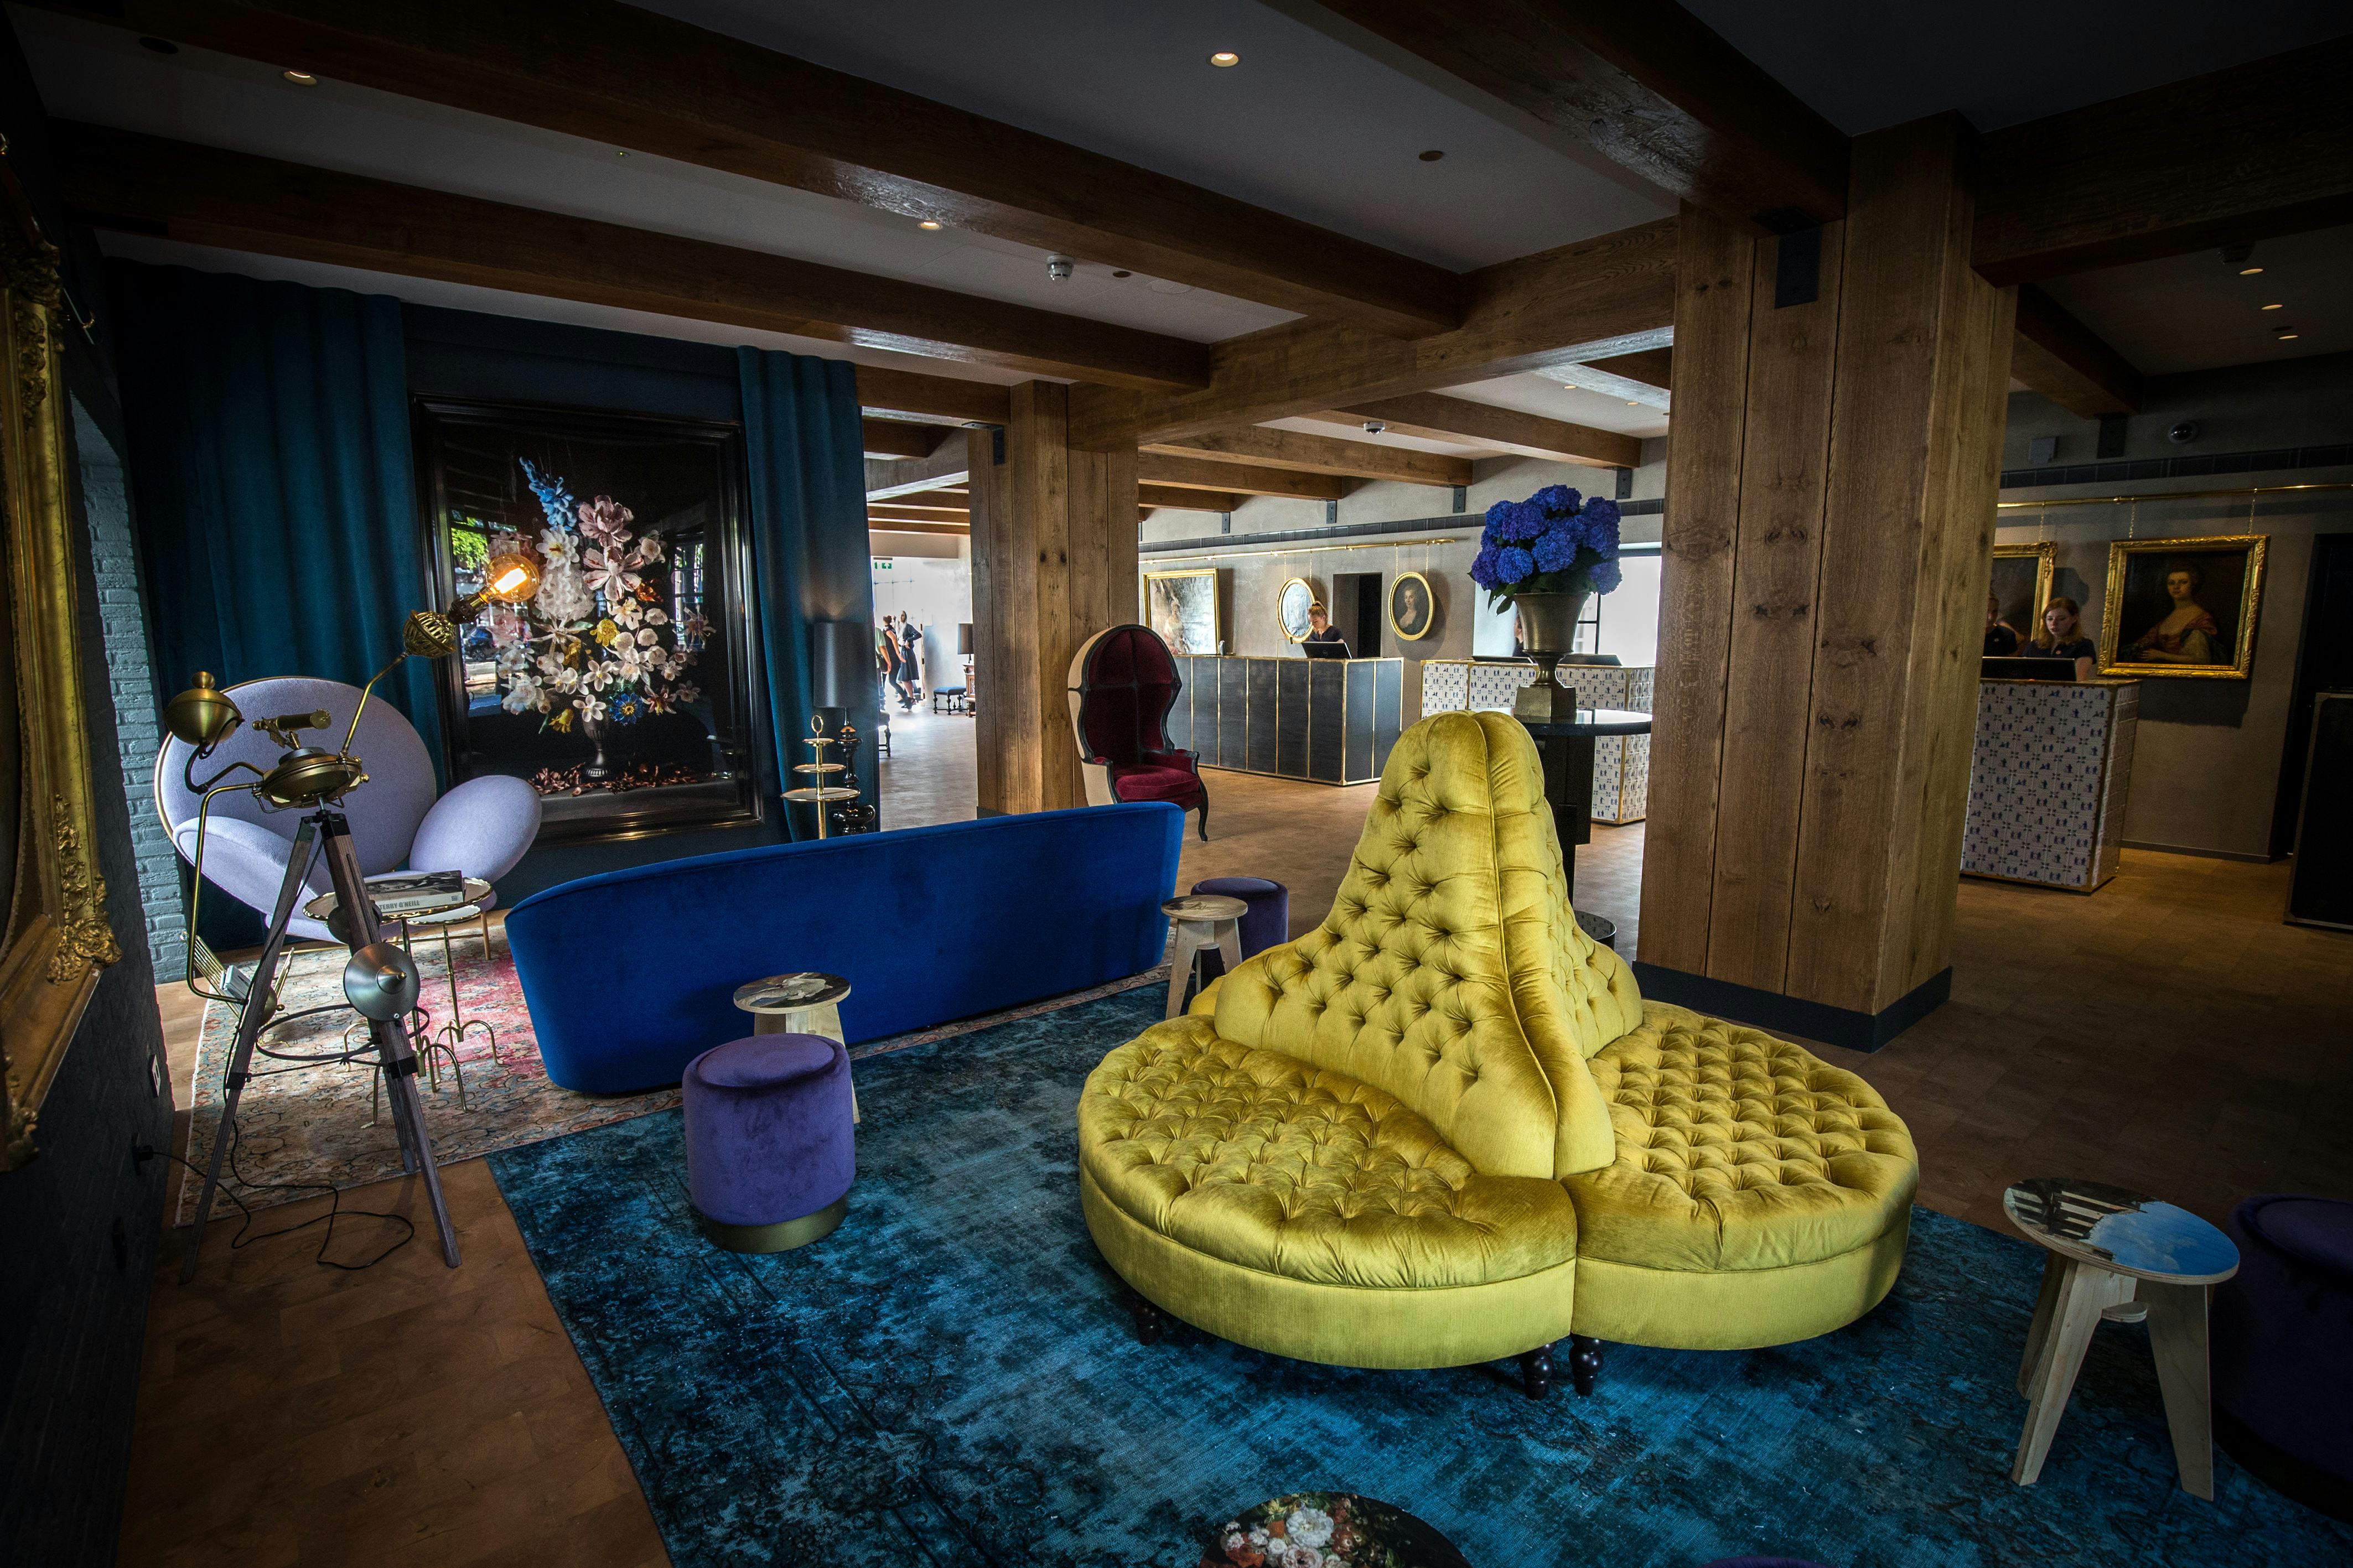 Zacht en kleurrijk meubilair als blikvanger in de lobby van Pulitzer Amsterdam. Foto: Diederik van der Laan